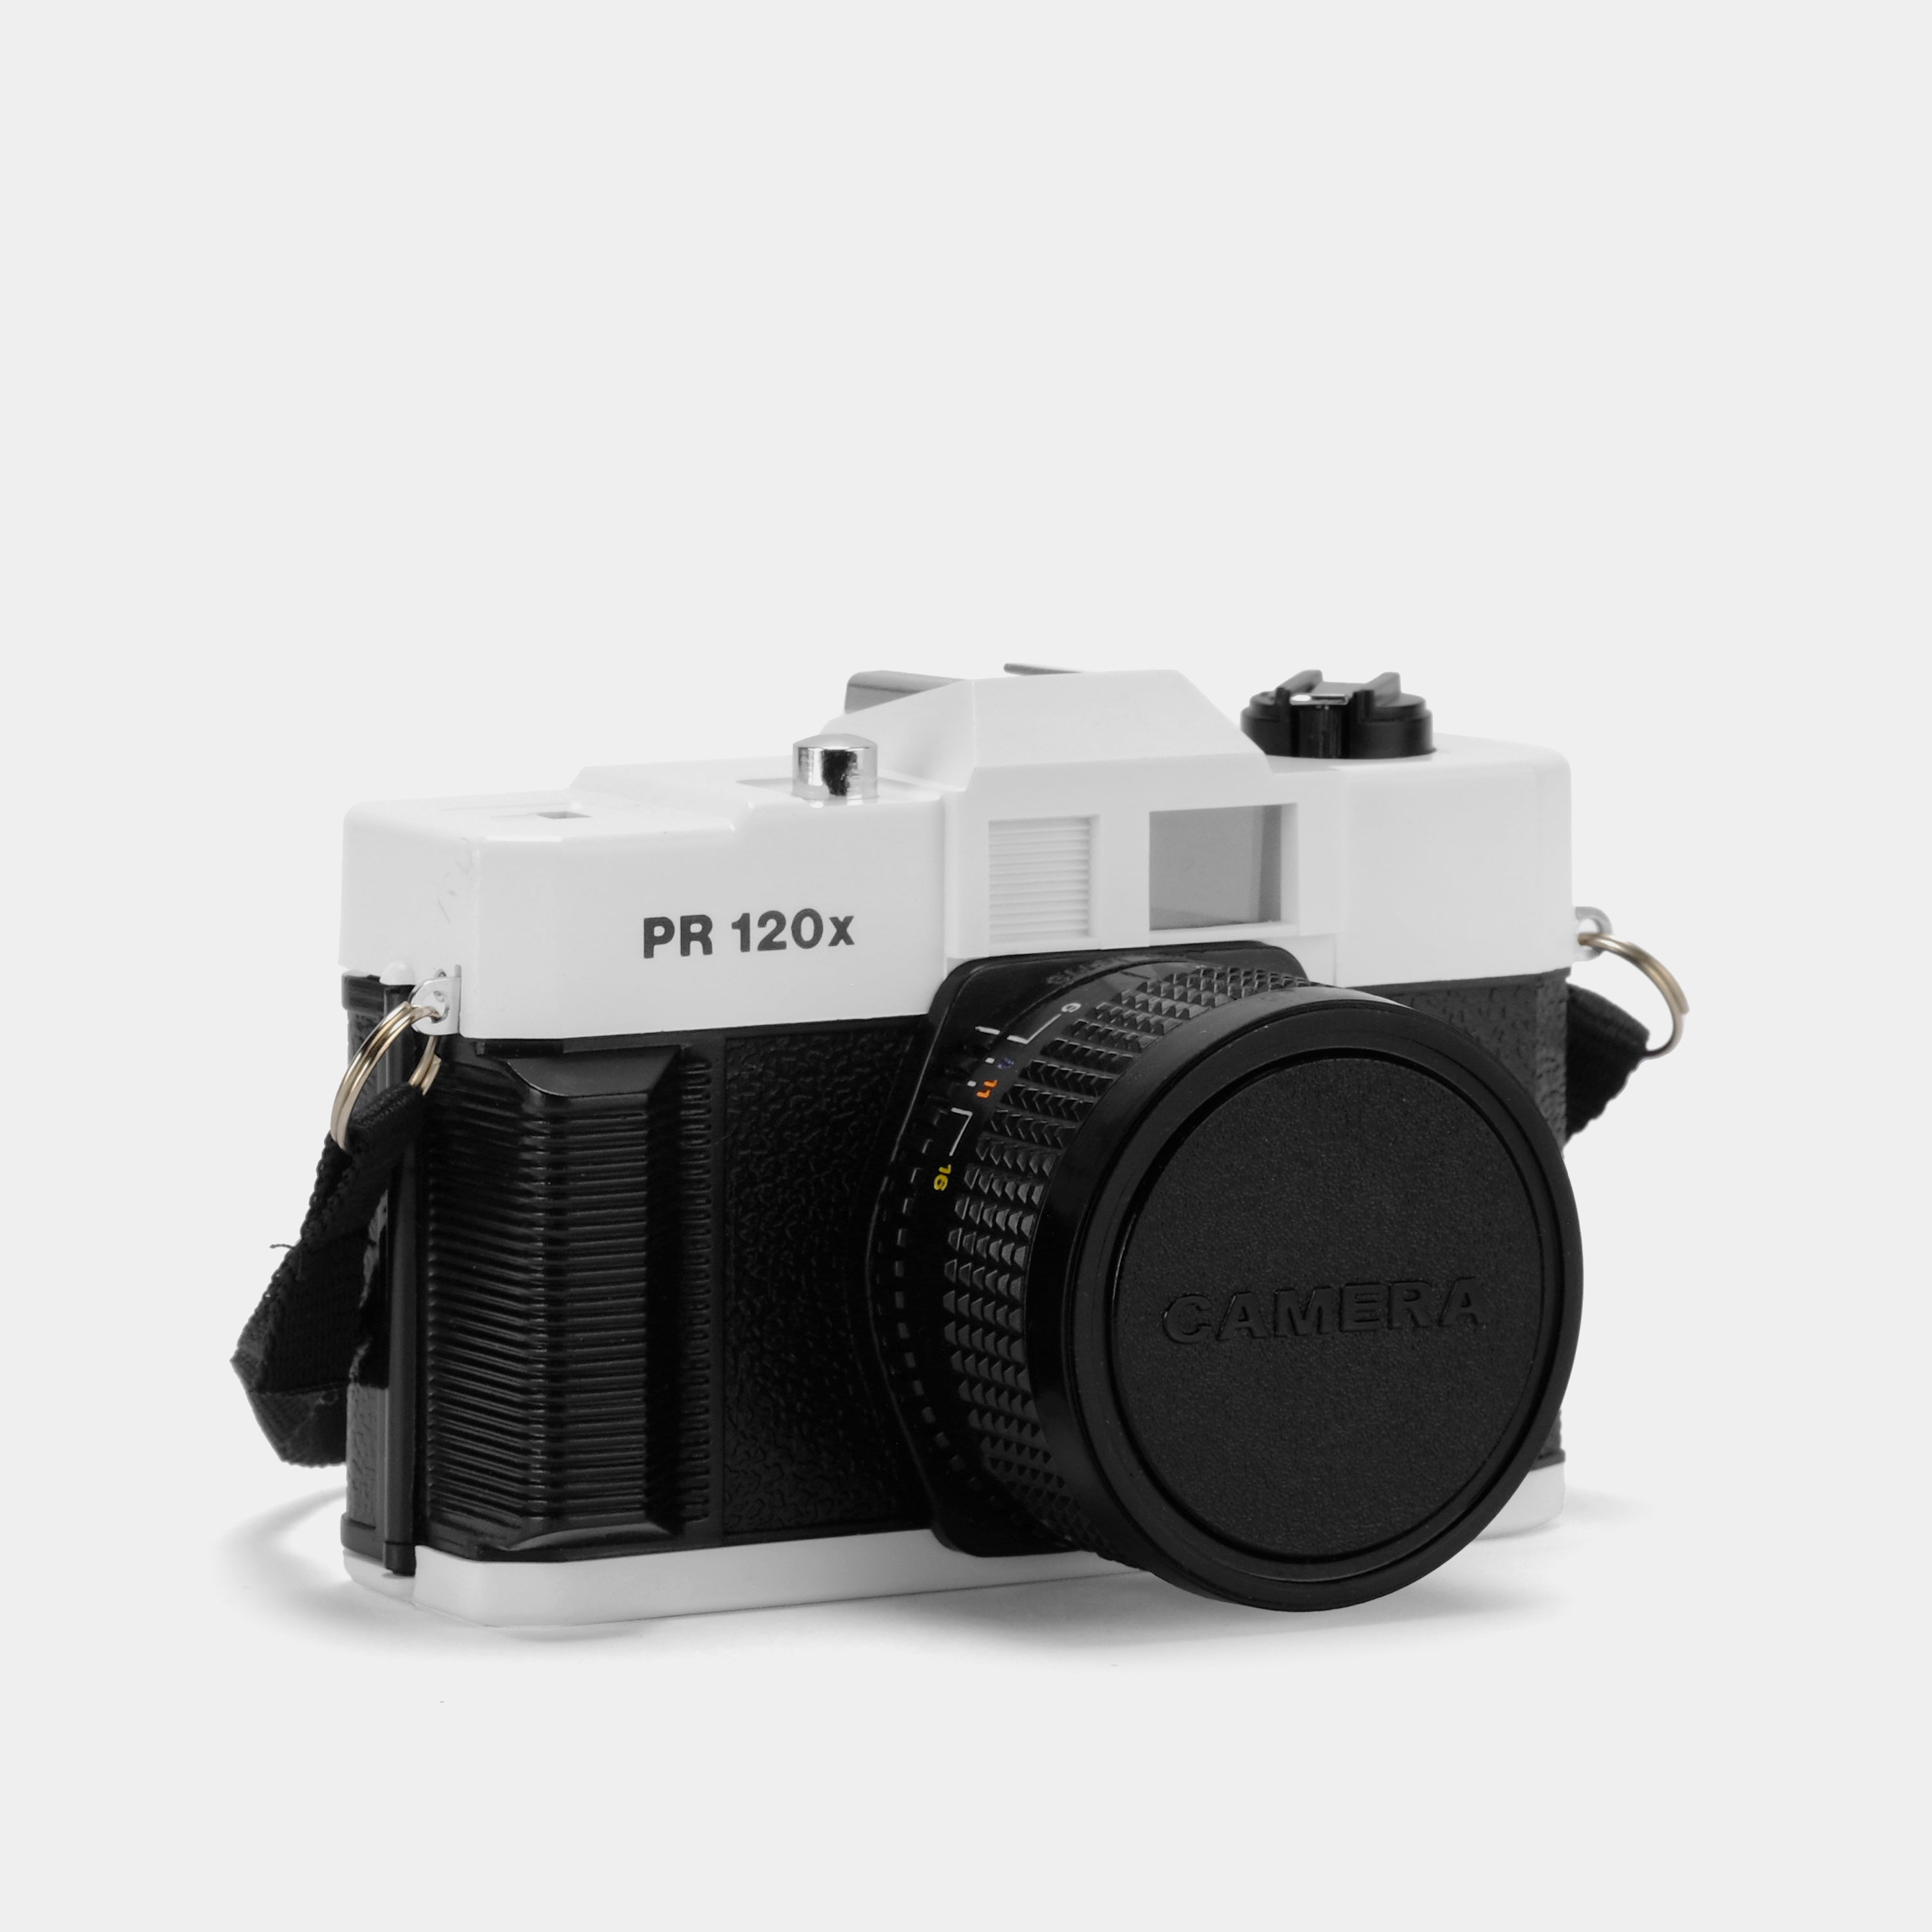 Palais Royal 120x 35mm Point and Shoot Film Camera